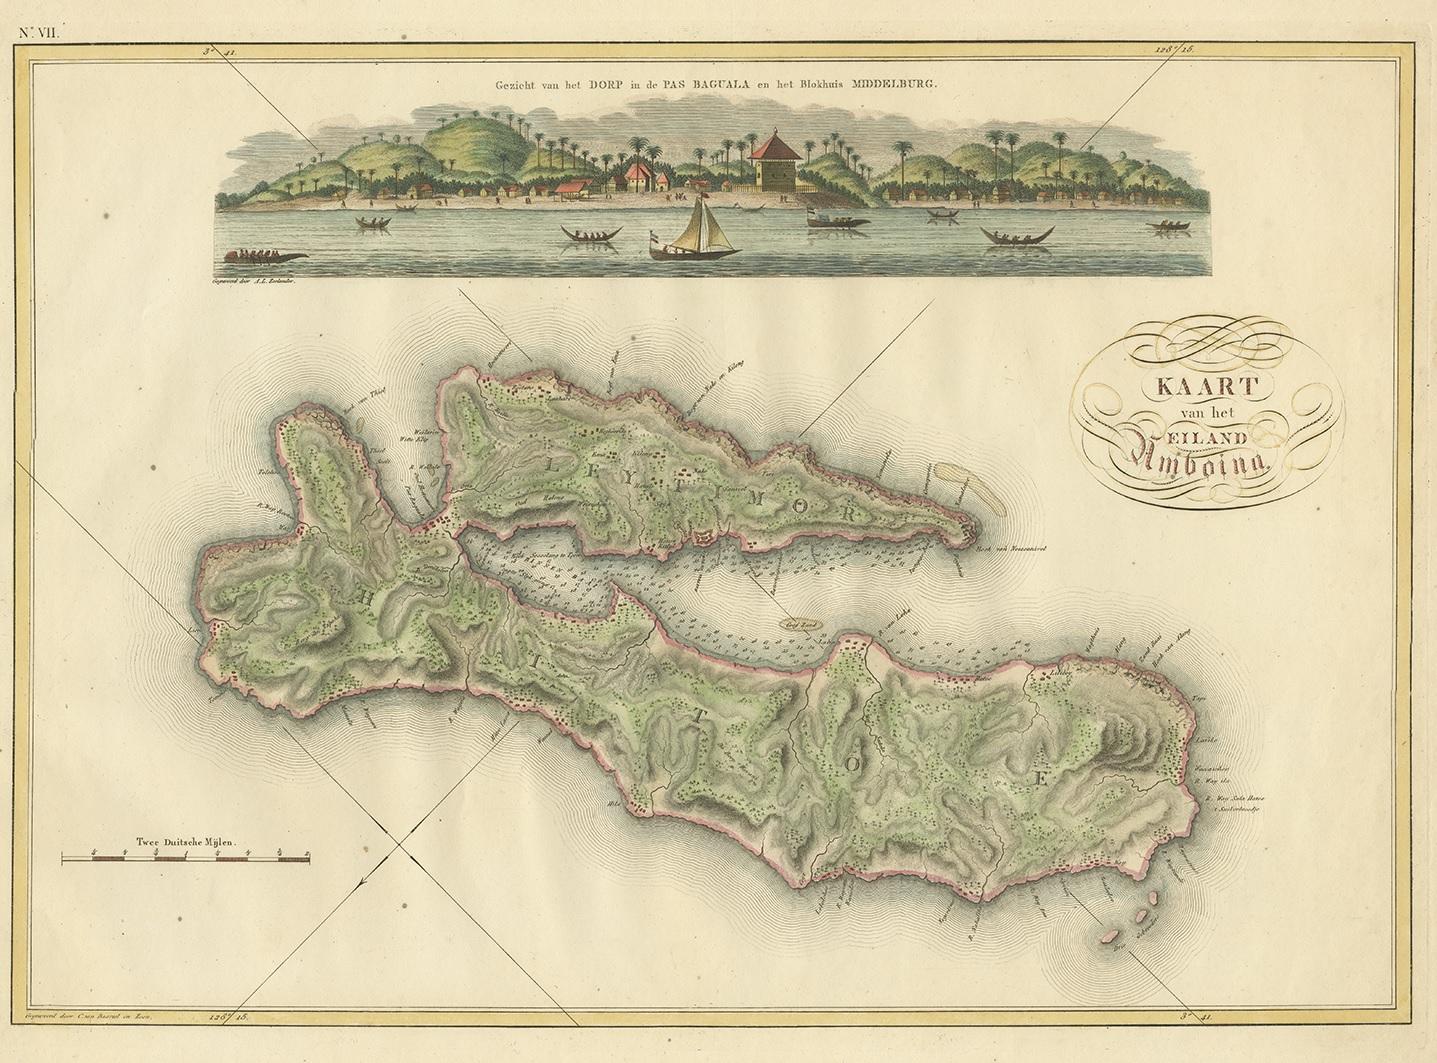 Antique map titled 'Kaart van het Eiland Amboina'. Rare and attractive map of Ambon Island. One of 12 maps from 'Atlas van Overzeesche bezittingen' (Atlas of Oversea Possessions) by J.S. van den Bosch. J.S. van den Bosch (1780-1844), major general,